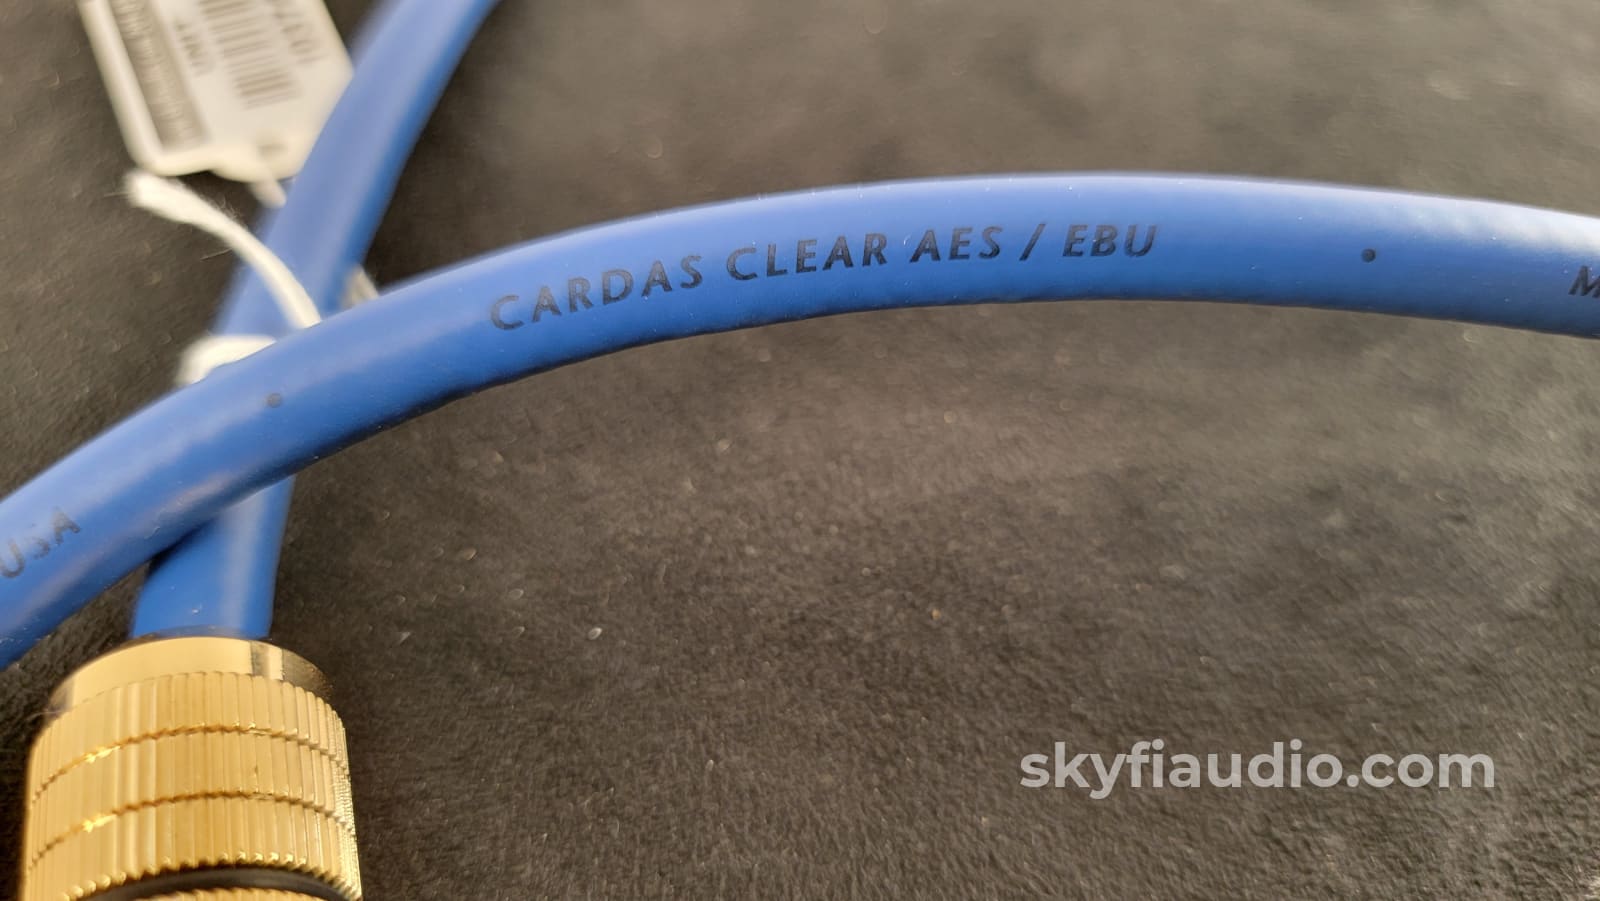 Cardas Clear AES/EBU Digital Cable - 1m